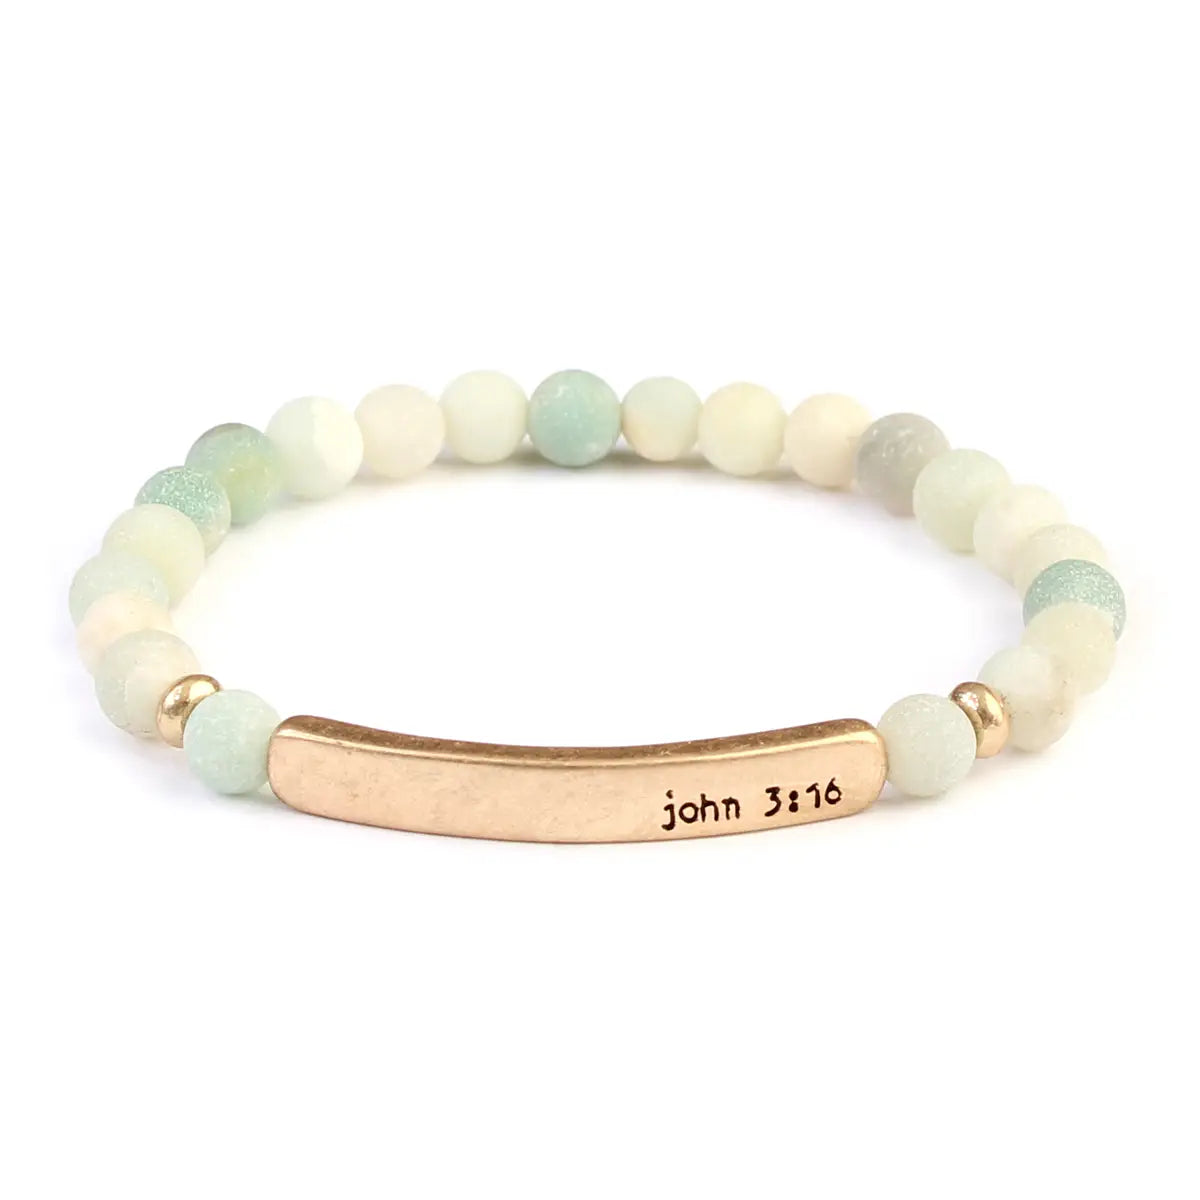 John 3:16 bar bracelet